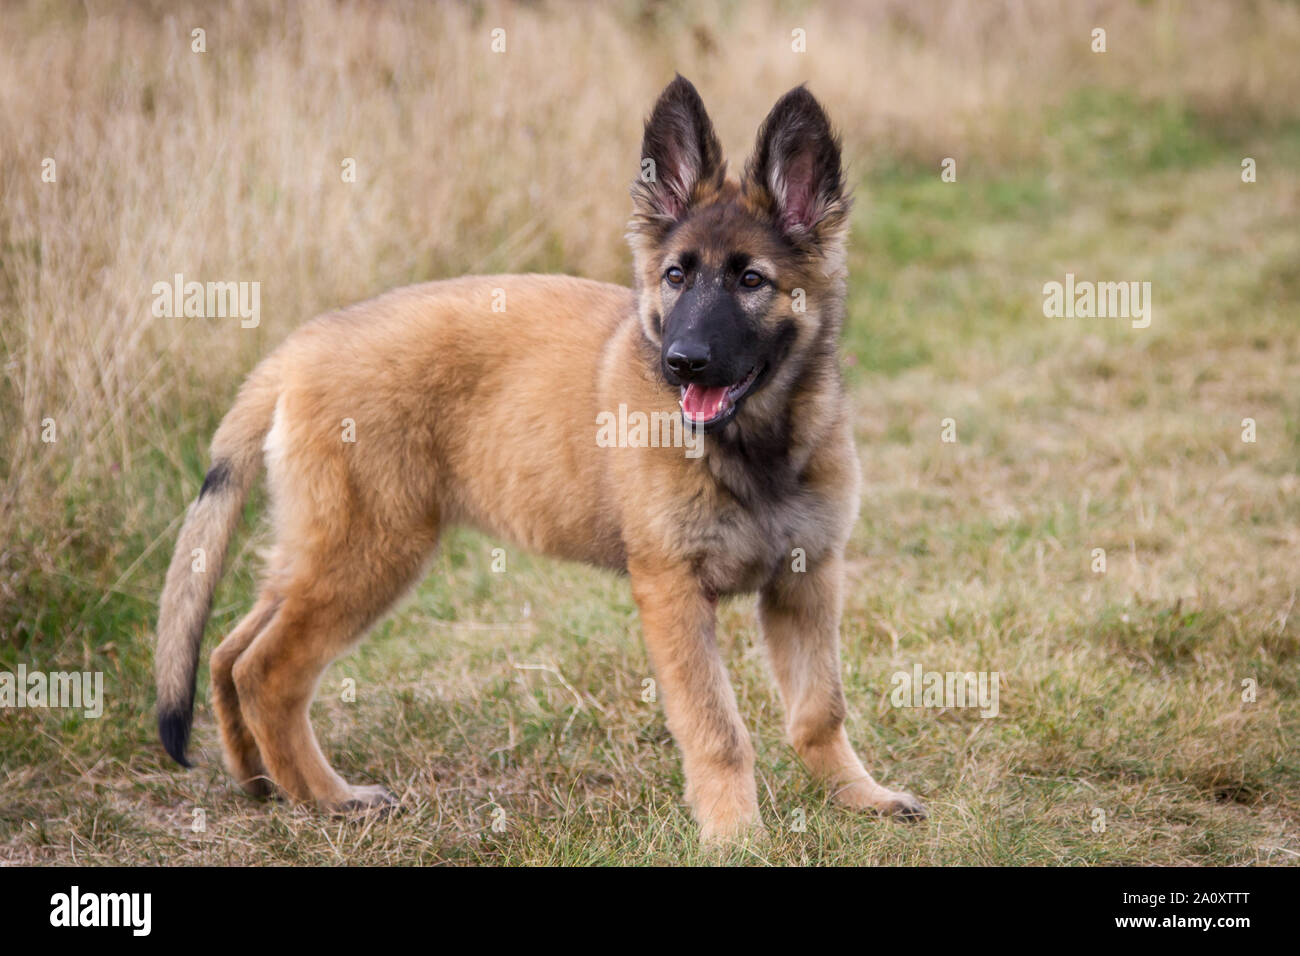 3 months old german shepherd